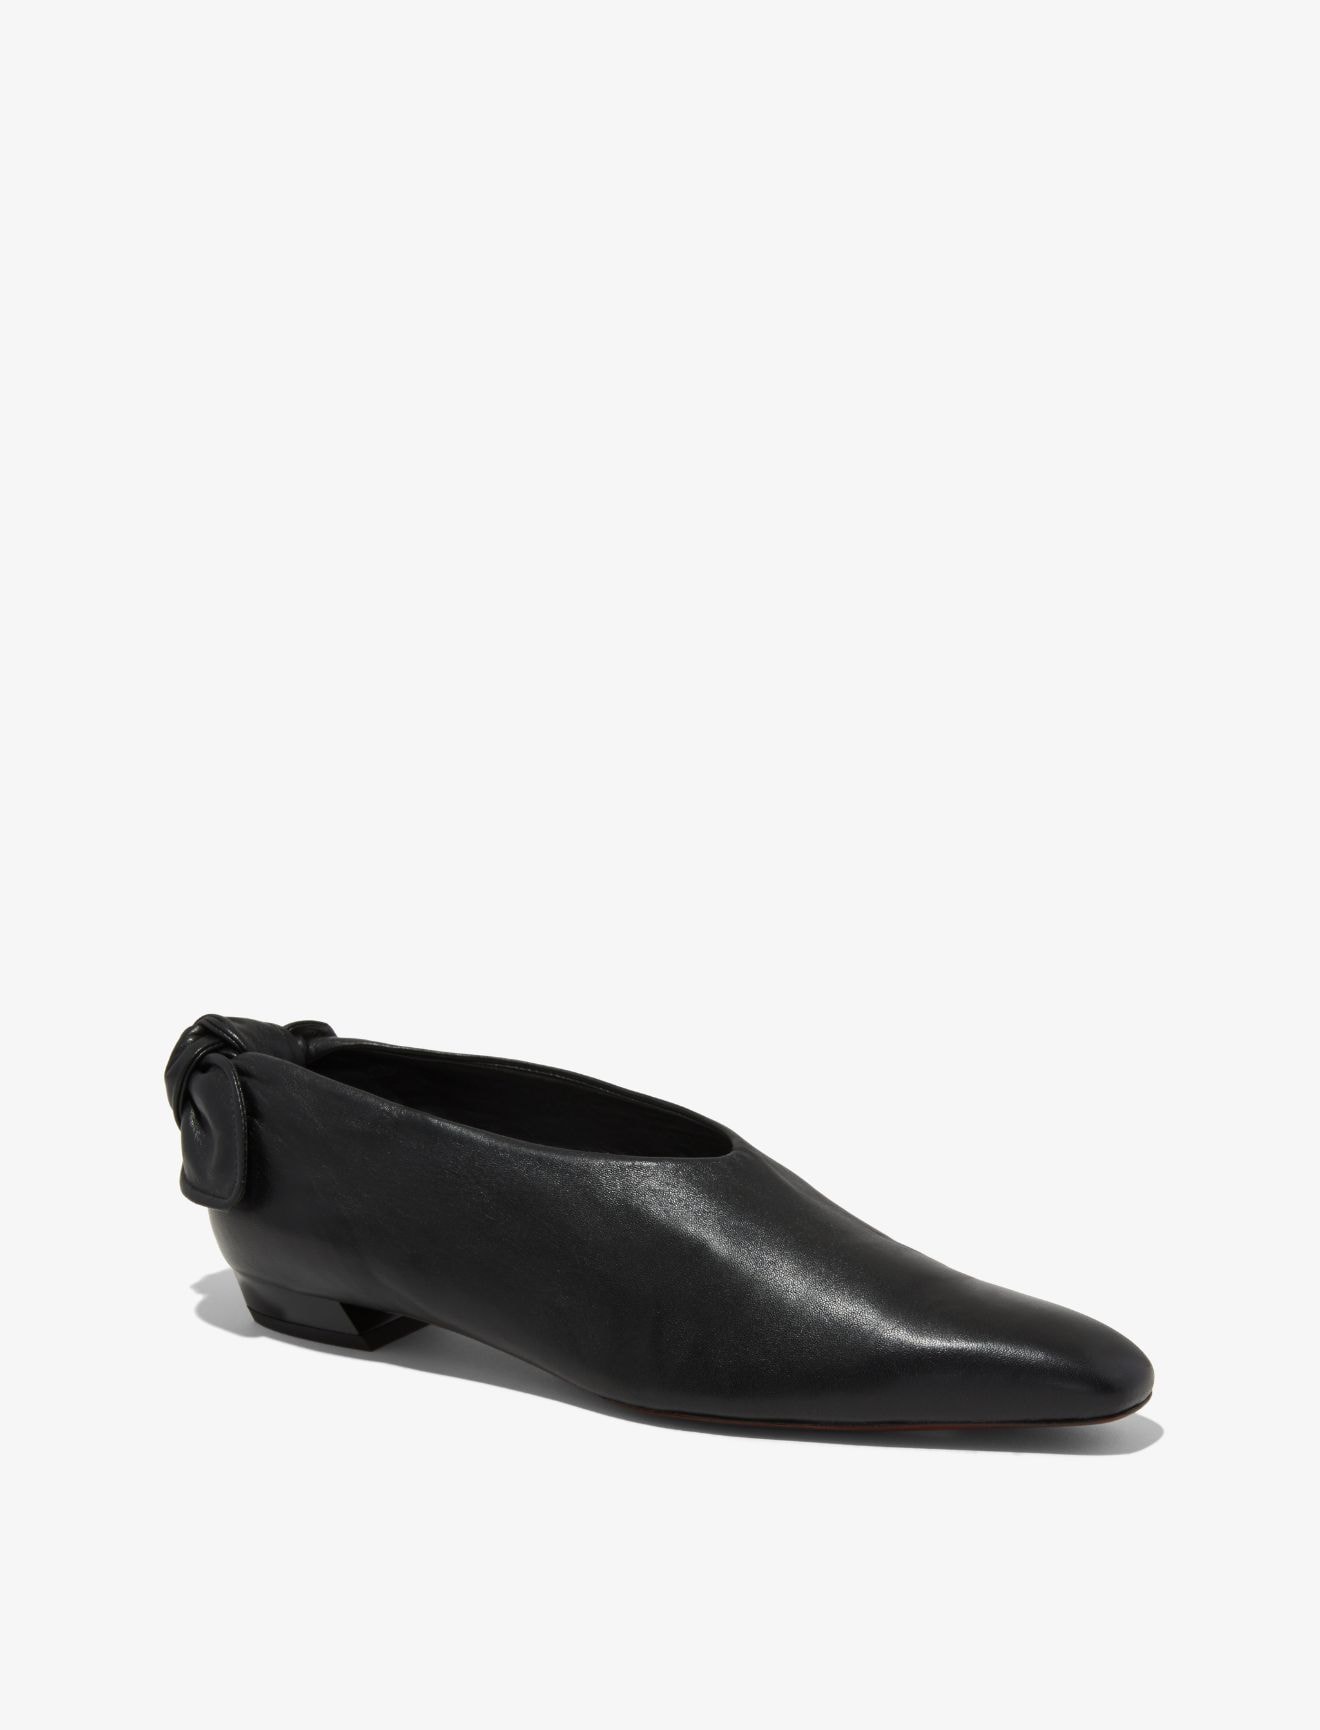 black tie flat shoes